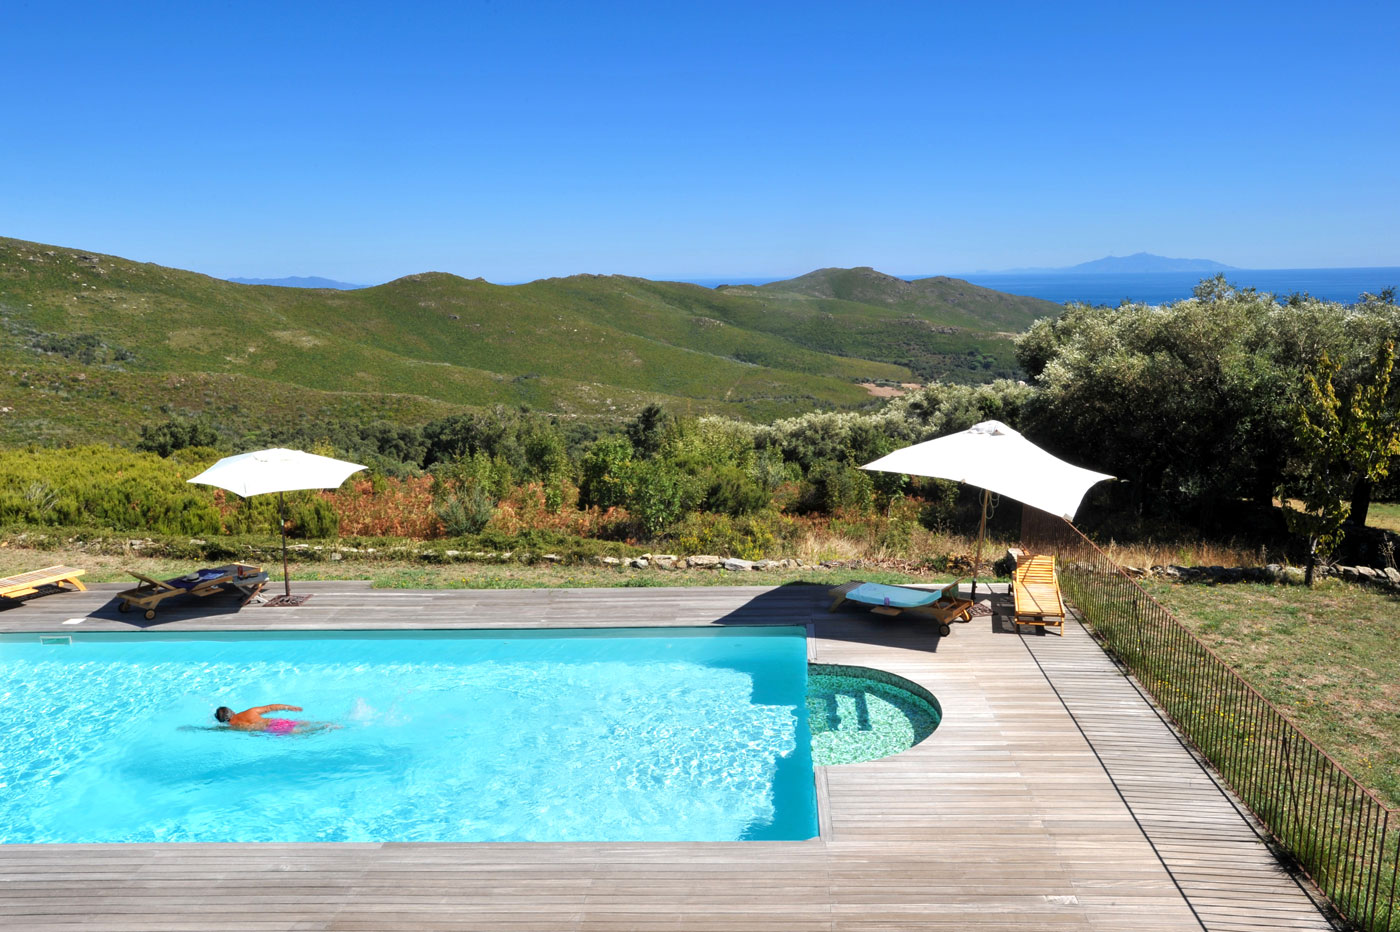 La piscine des bergeries du campone, location de vacances dans le Cap Corse